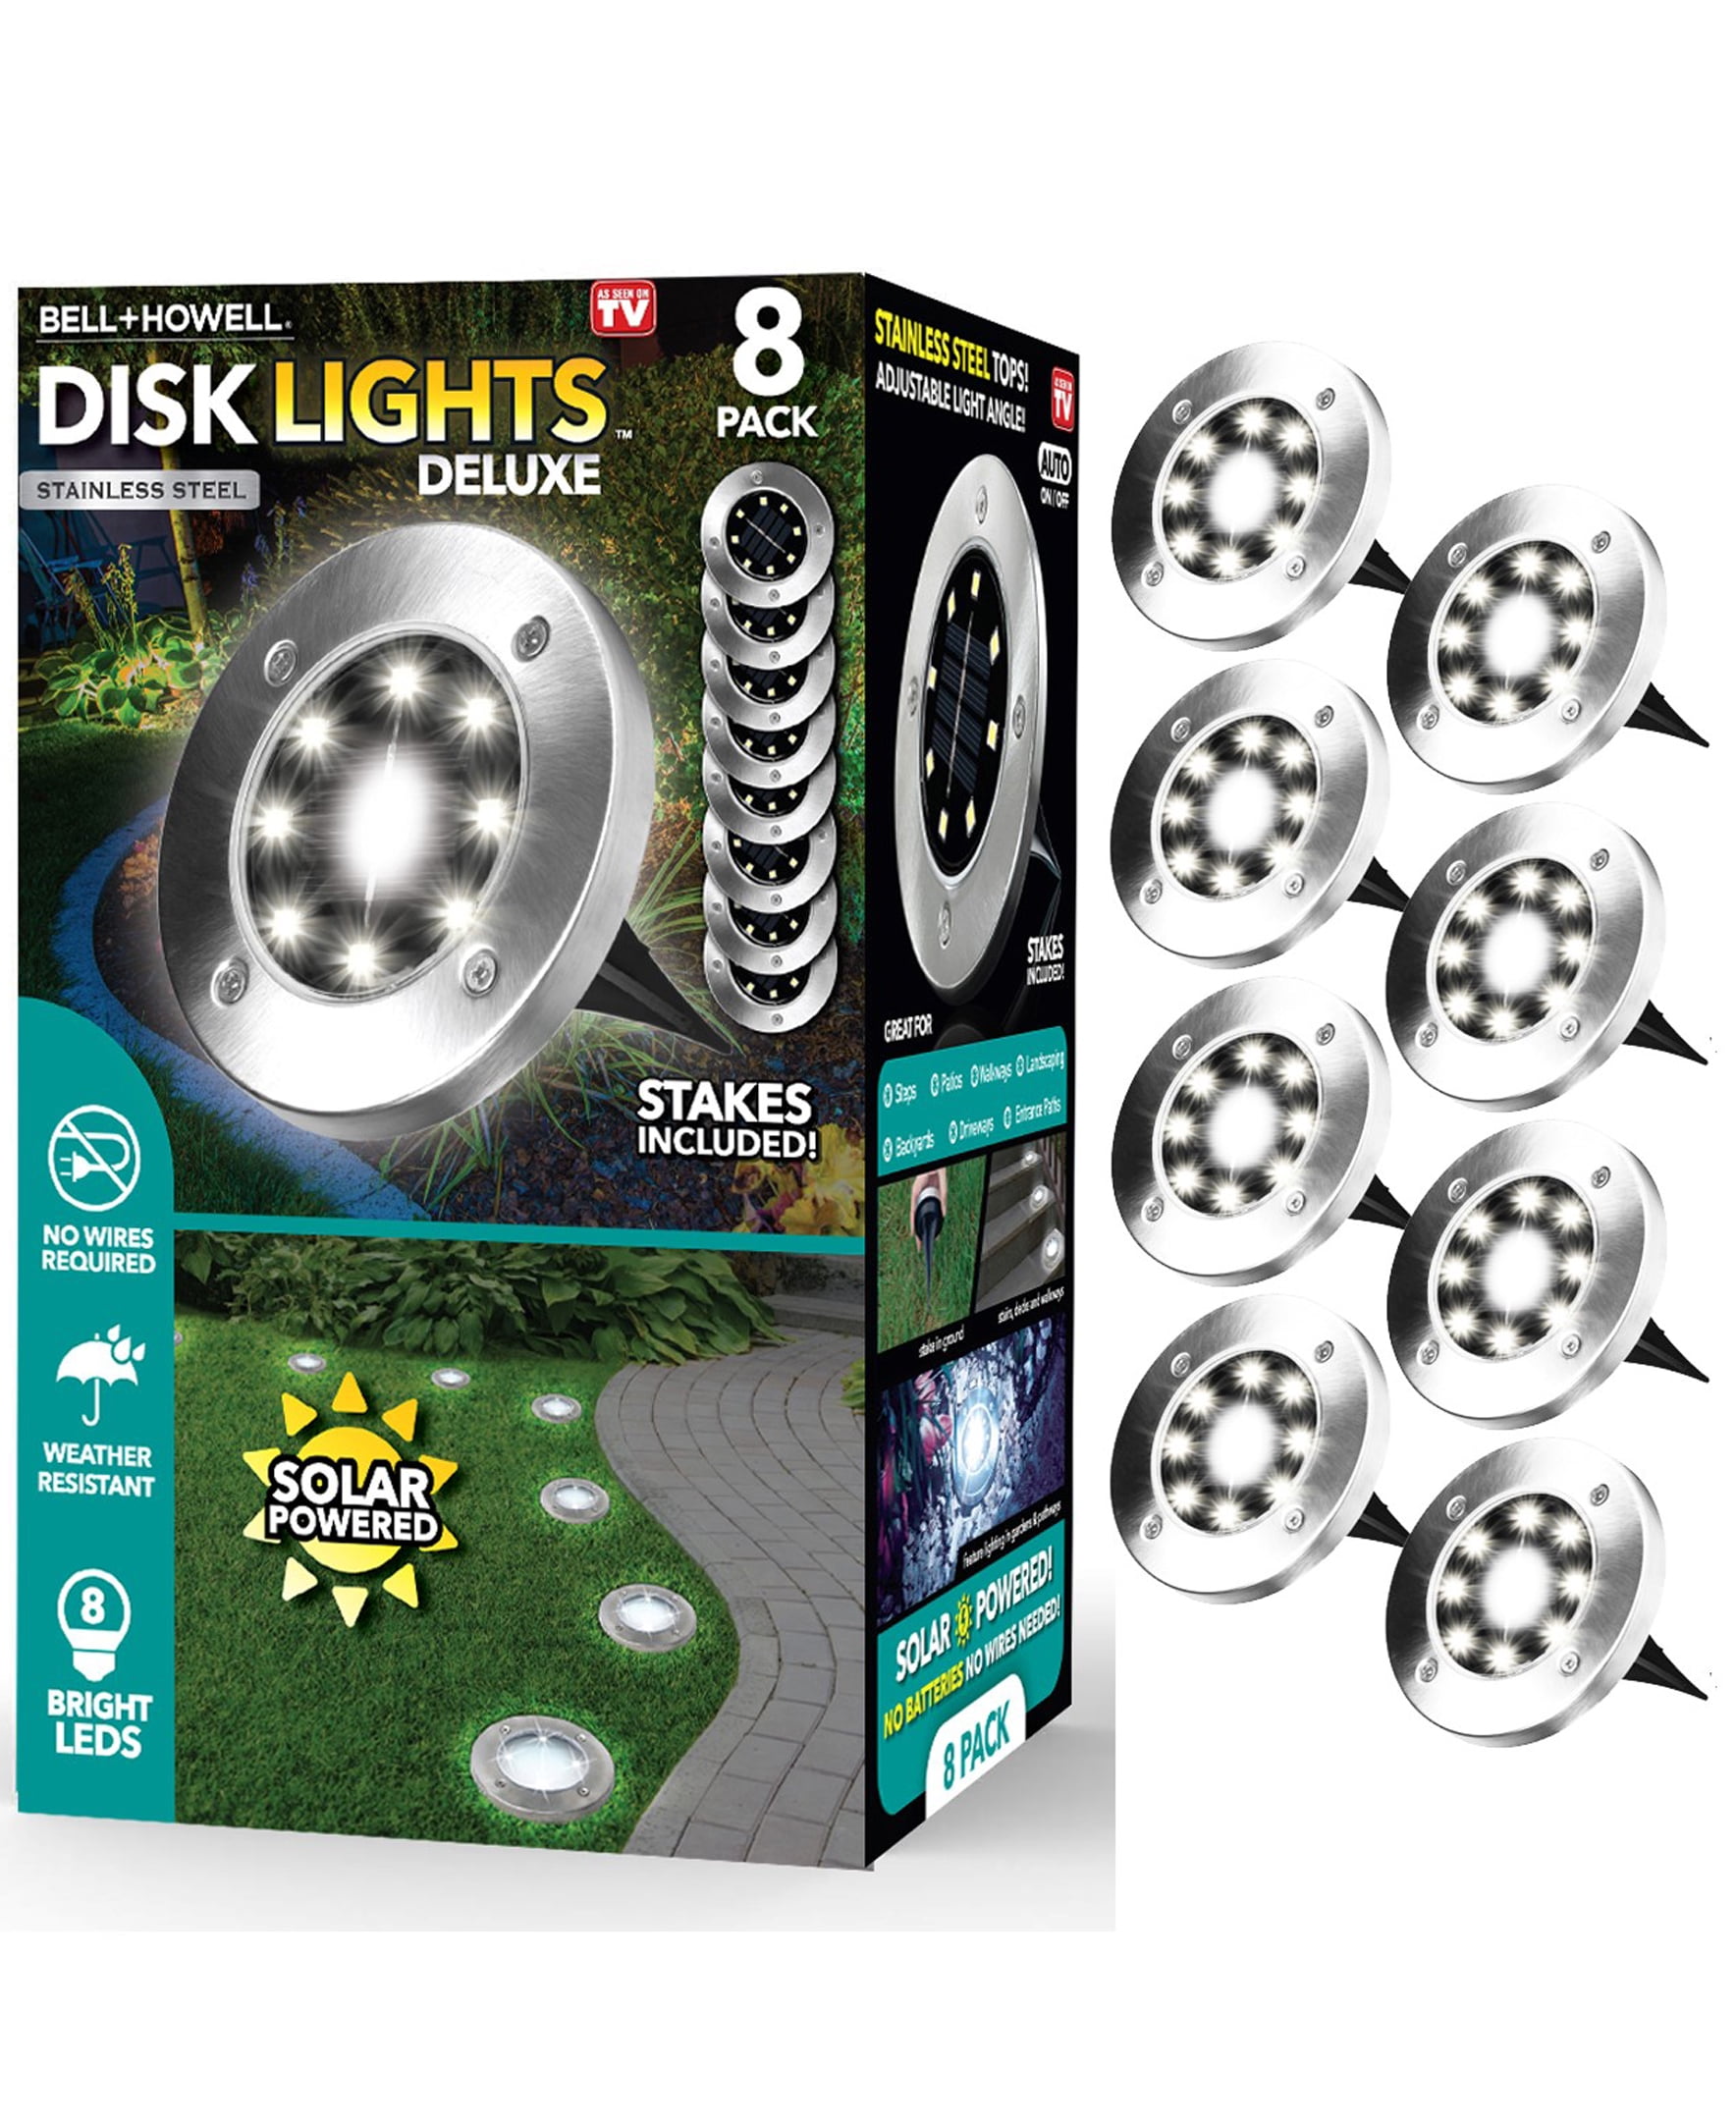 BELL + HOWELL 8-Pack Disk Lights 6-Lumen 3-Watt Paw Shape Low